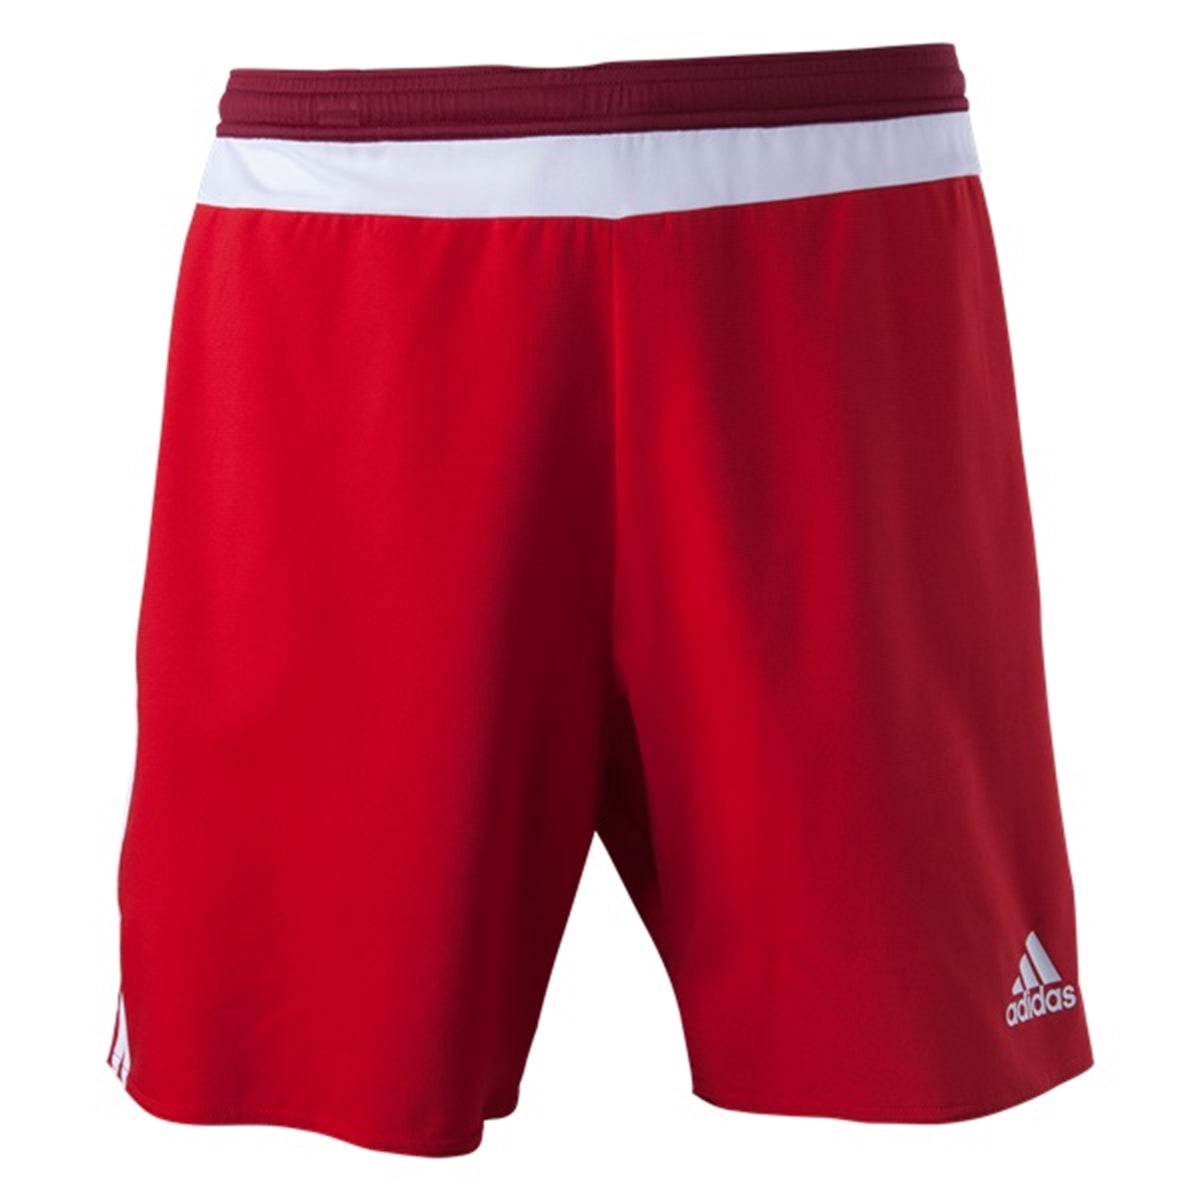 Adidas Boy Campeon 15 Youth Shorts